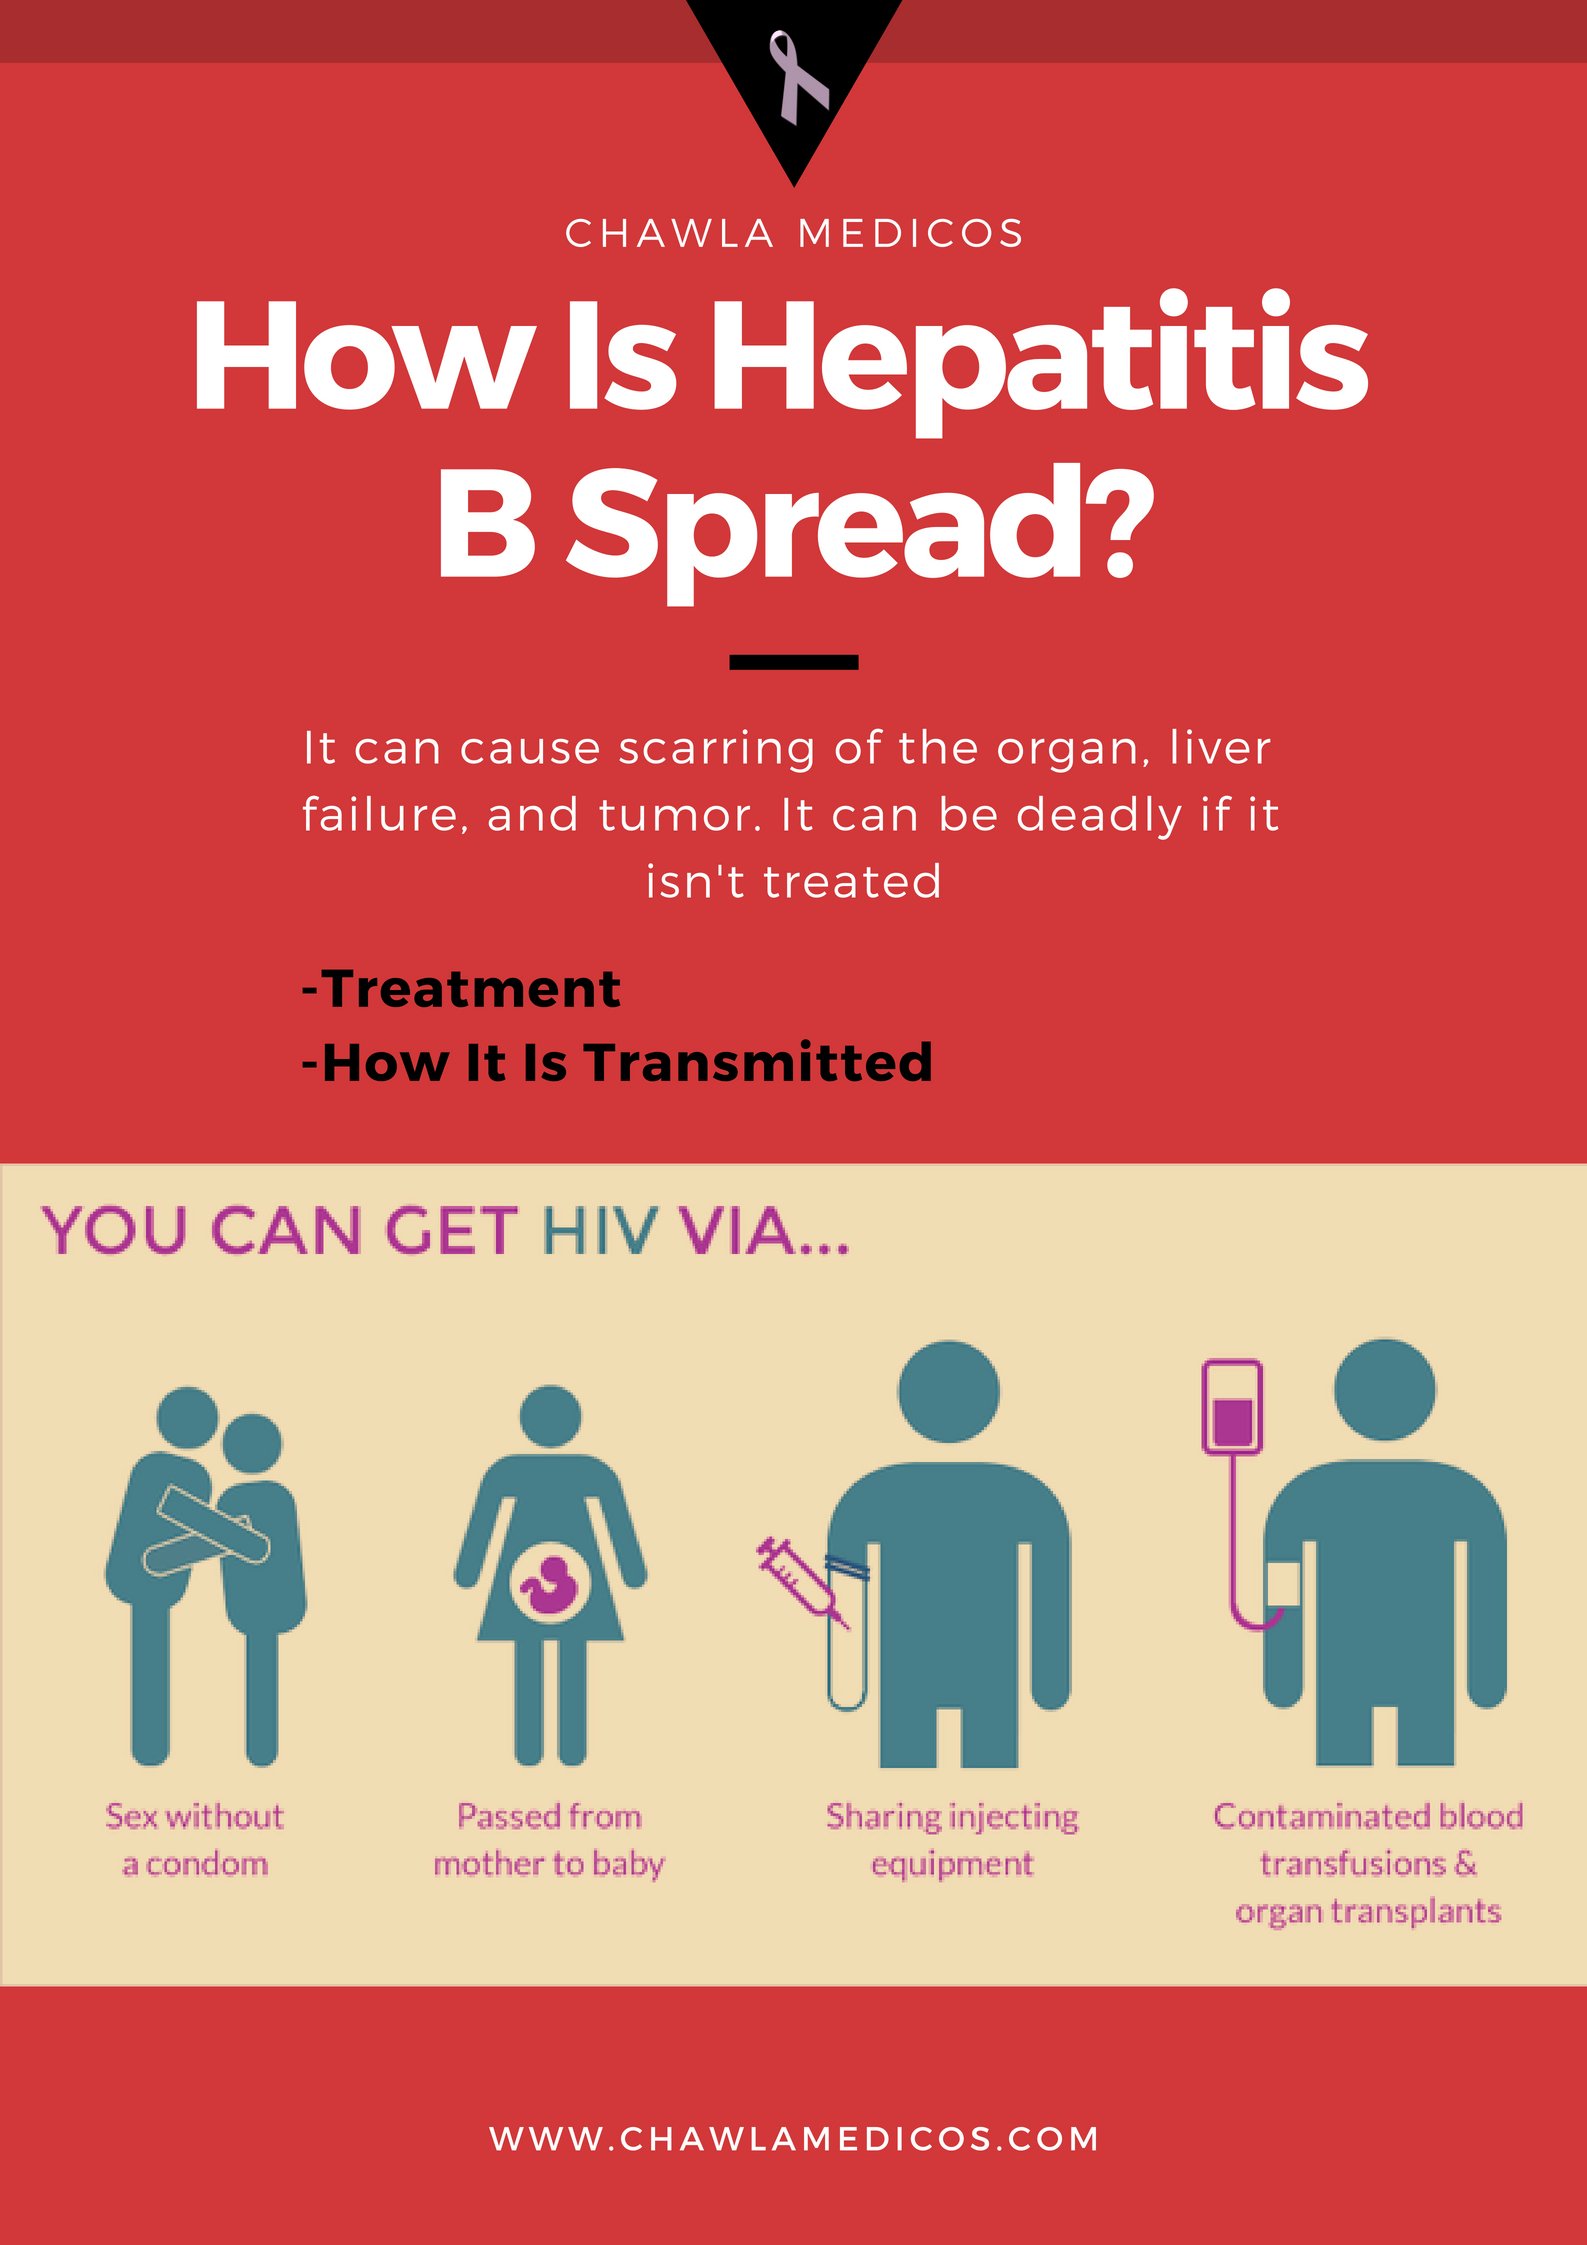 How Is Hepatitis B Spread?